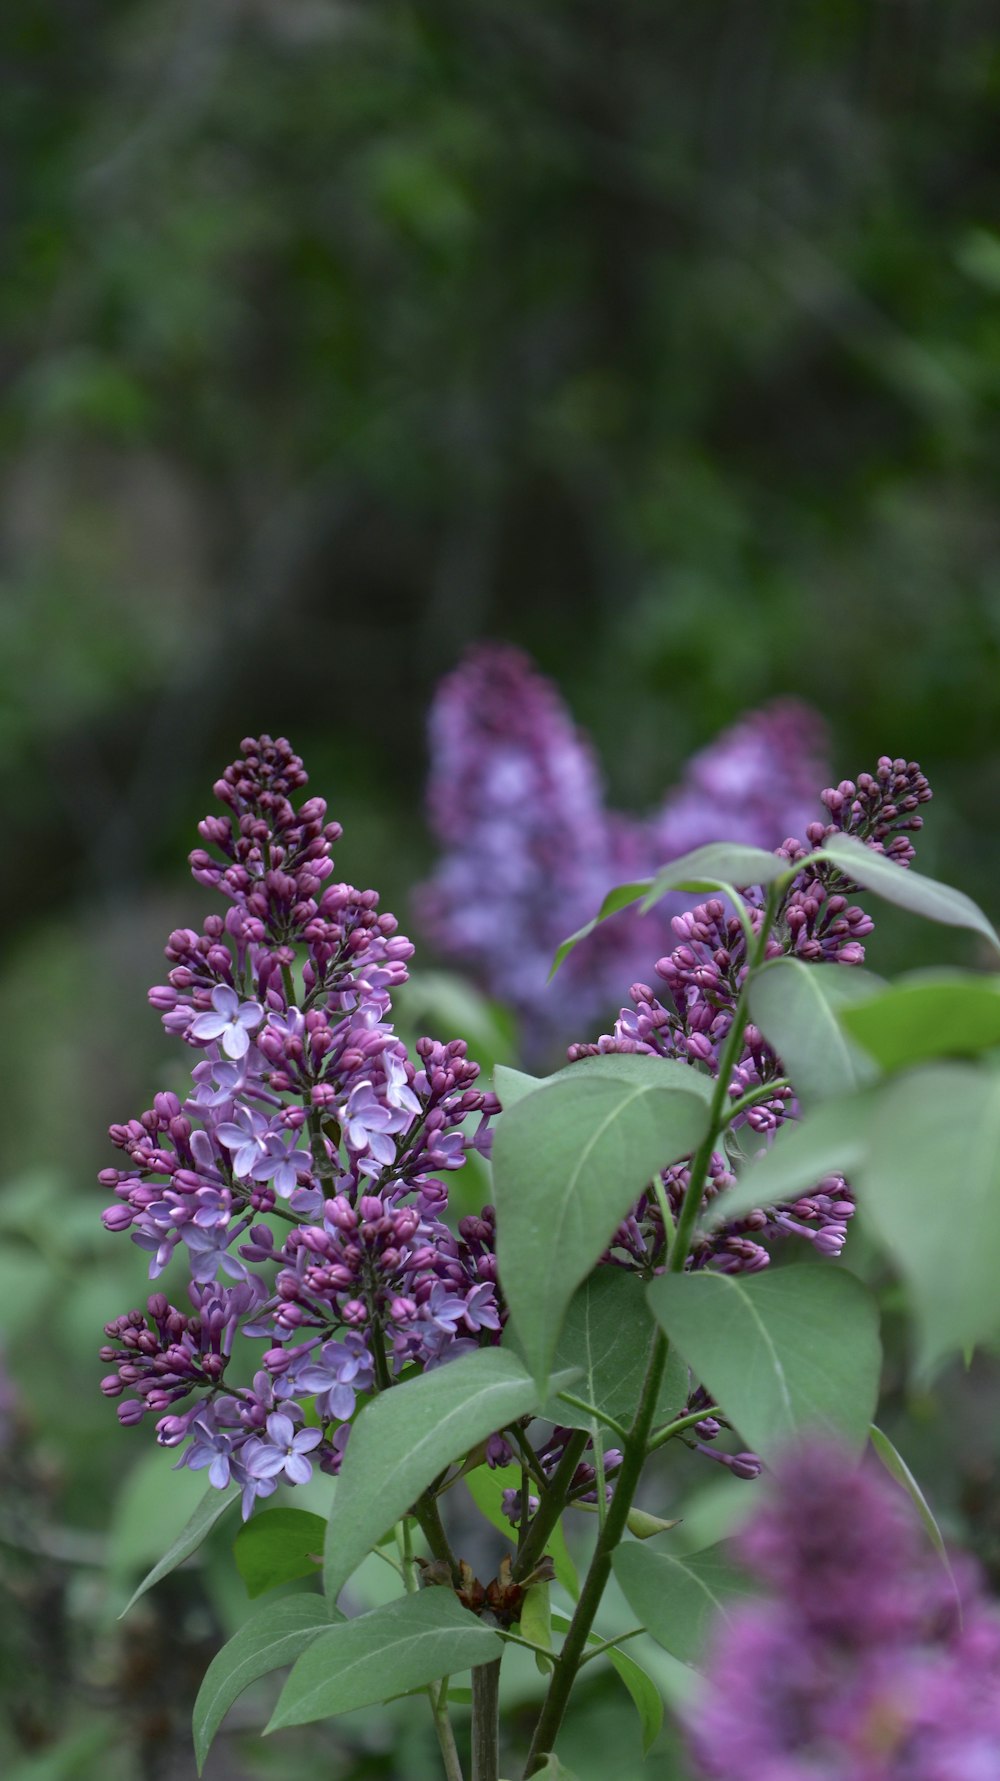 緑の葉を持つ紫色の花の束